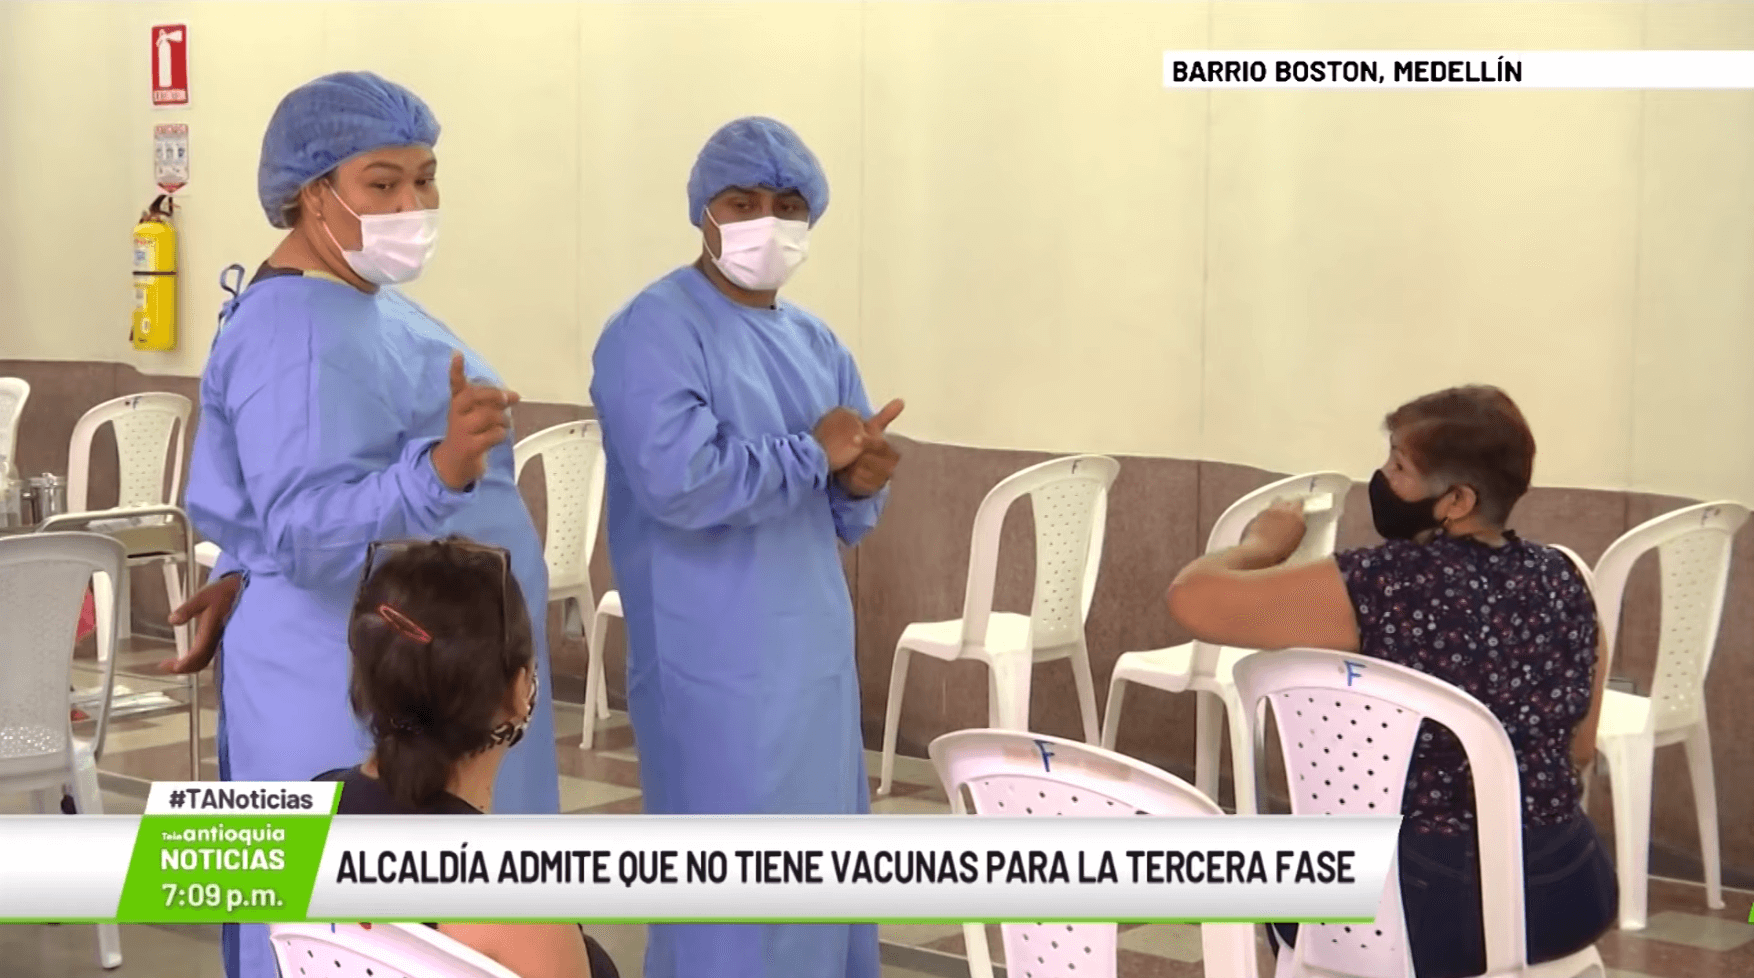 Alcaldía admite que no tiene vacunas para la tercera fase